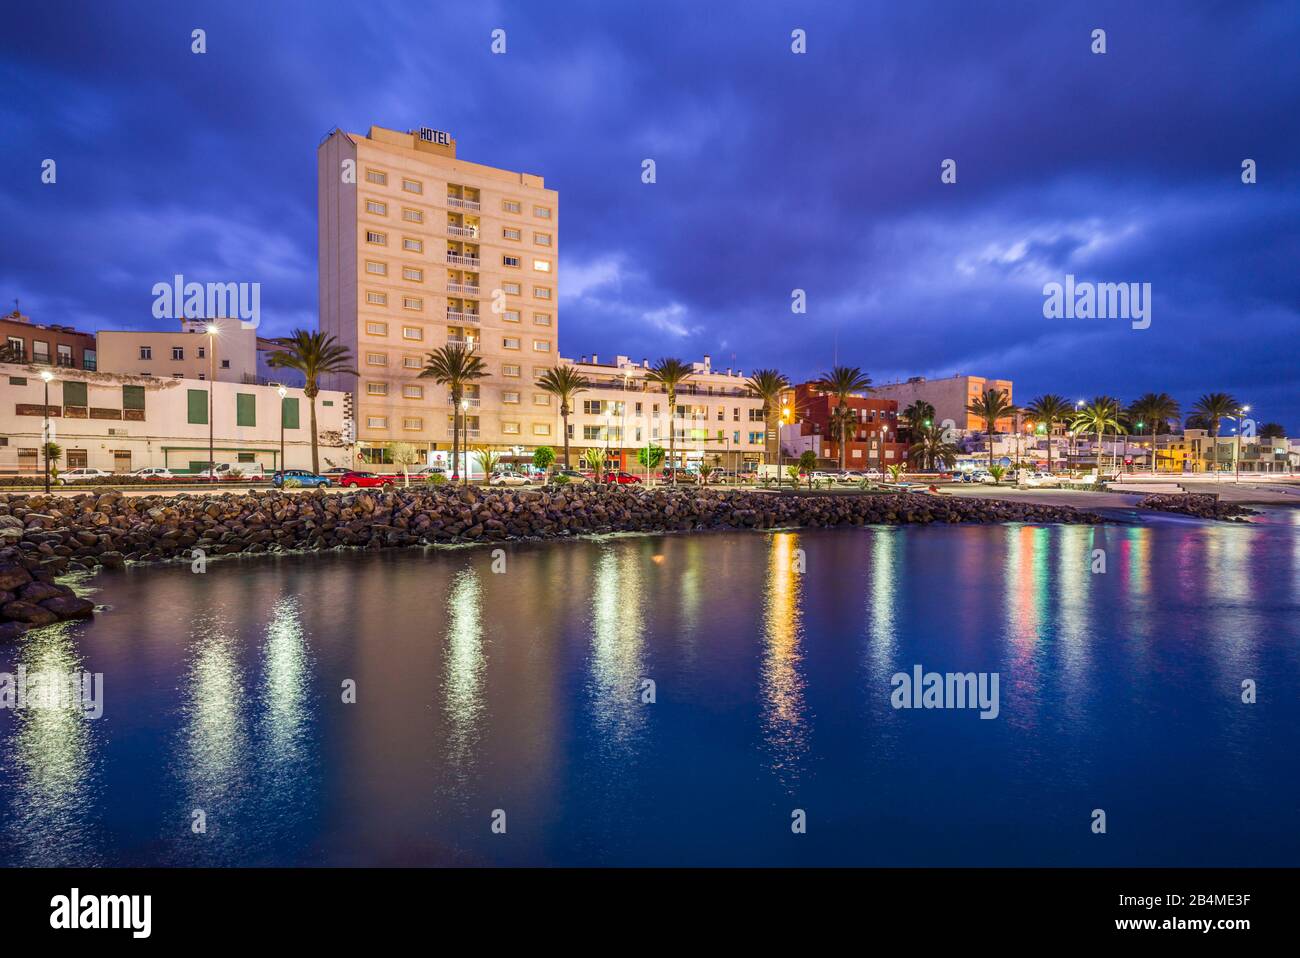 Spain, Canary Islands, Fuerteventura Island,  Puerto del Rosario, harborfront, dawn Stock Photo